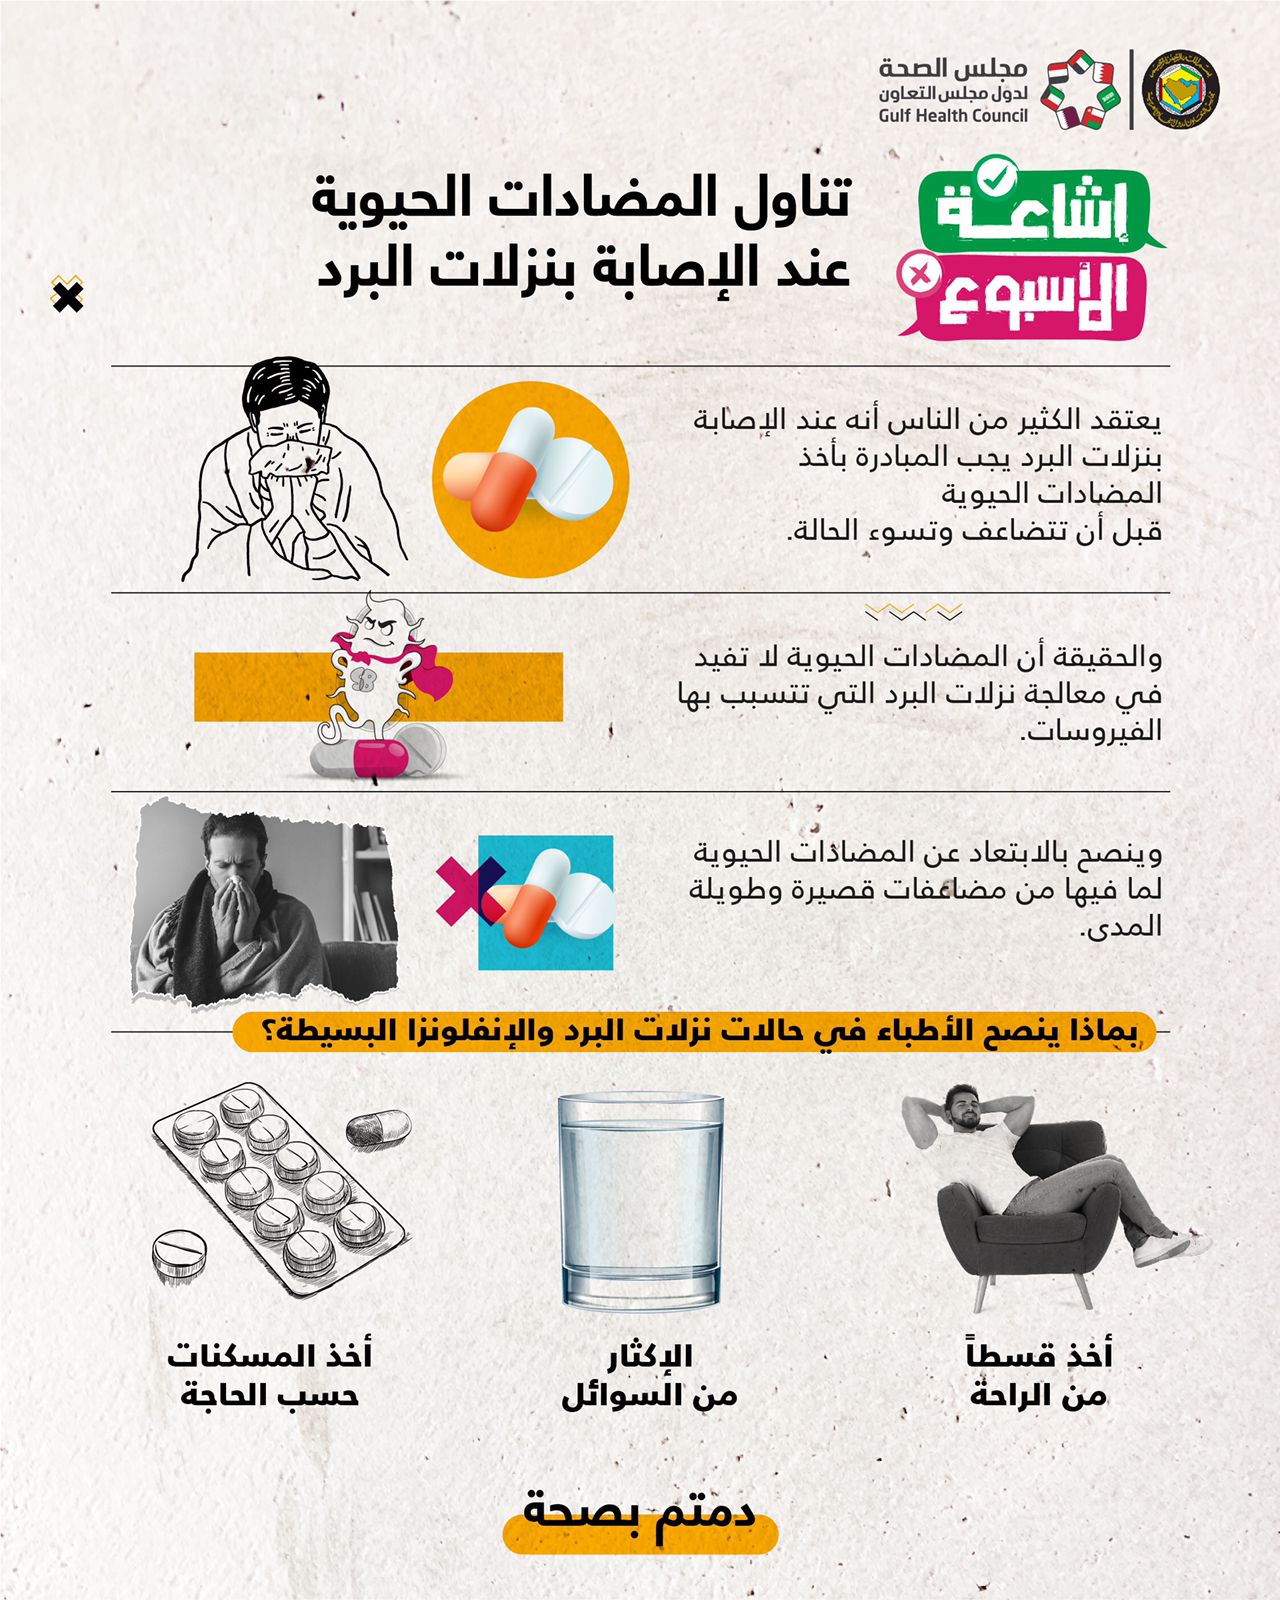 مجلس الصحة الخليجي : المضادات الحيوية لا تفيد مع نزلات البرد